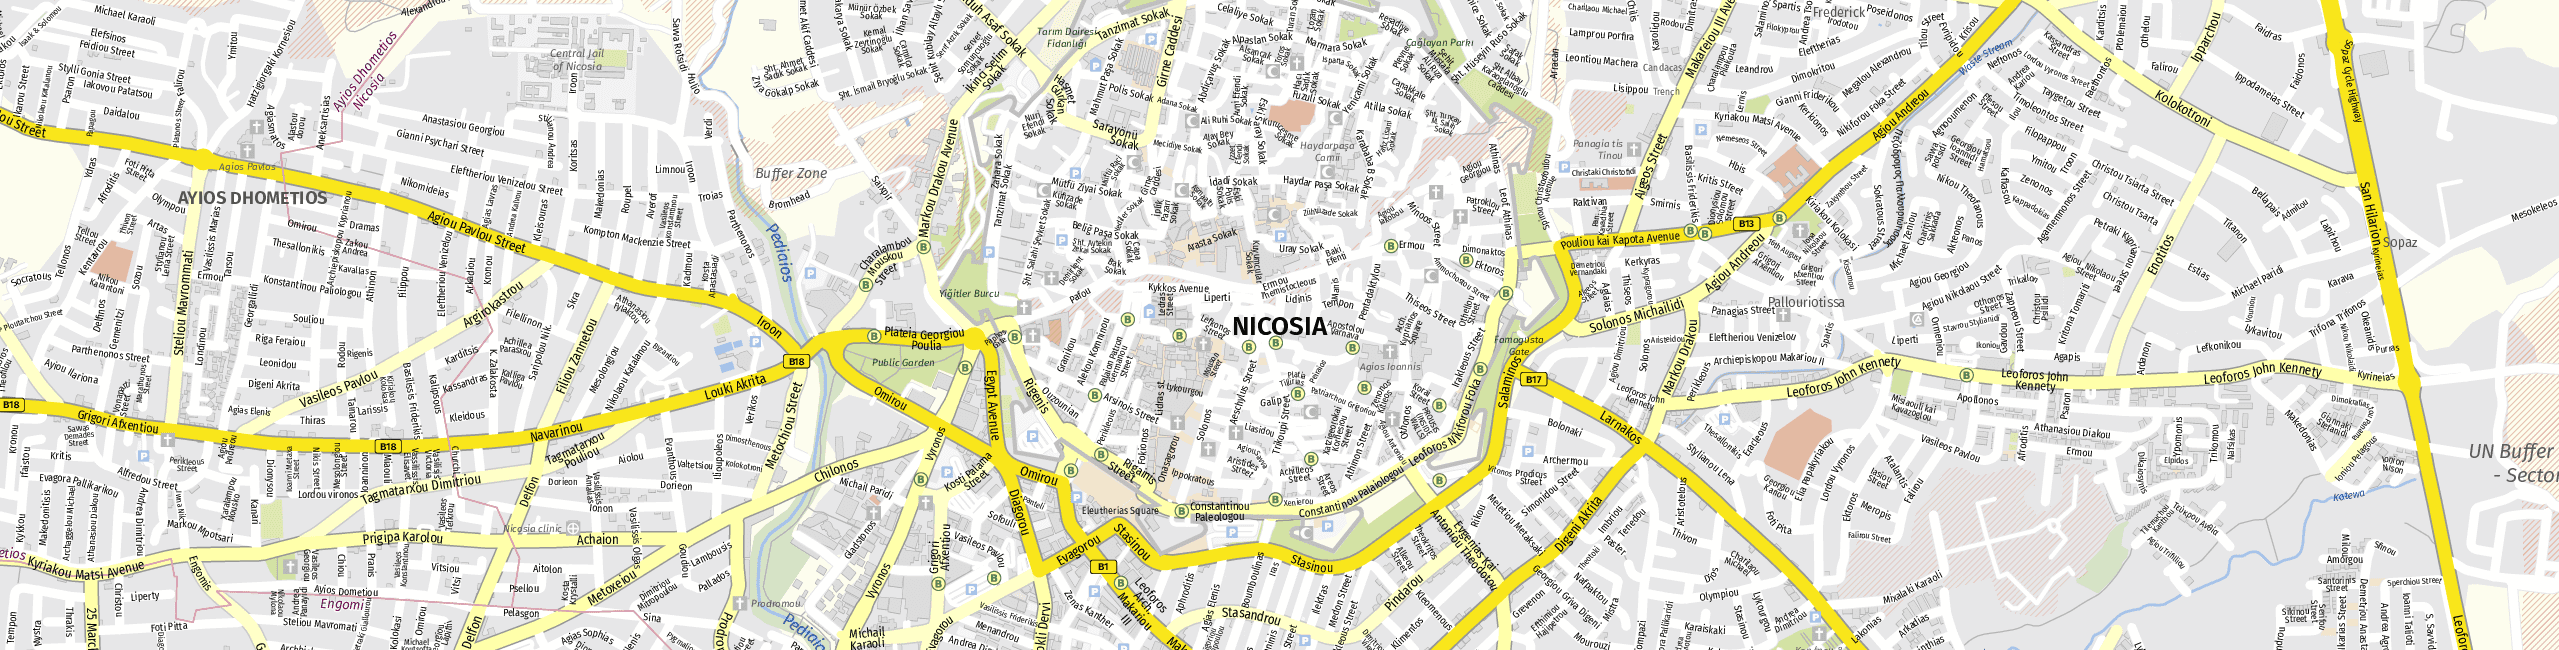 Stadtplan Nicosia zum Downloaden.